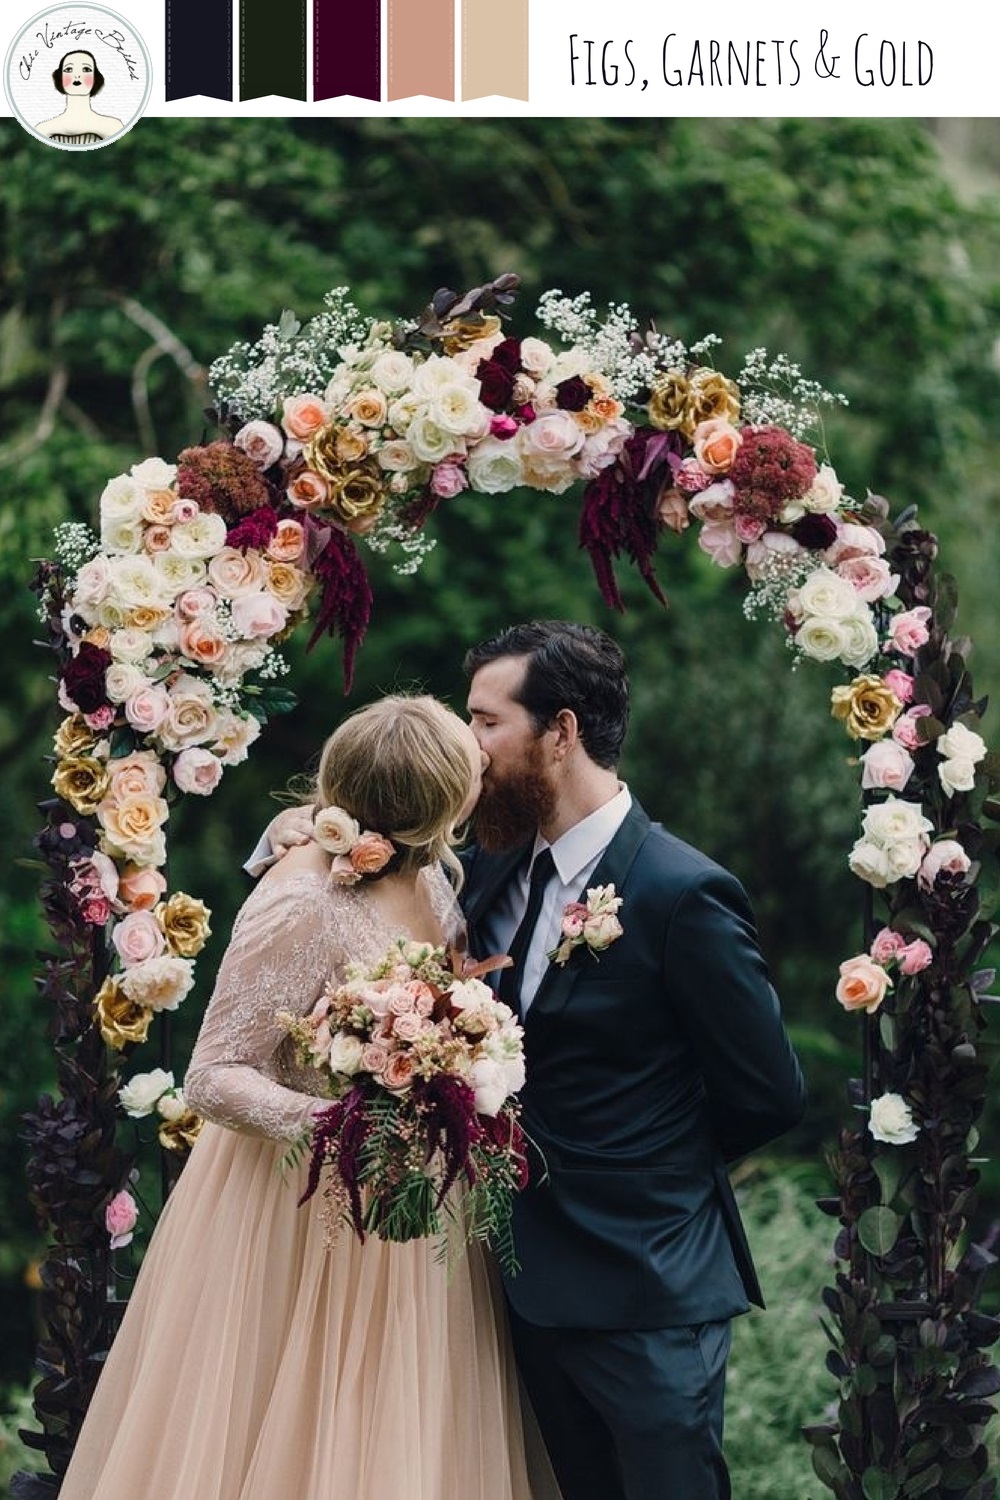 An Autumn Wedding Inspiration Board in Garnet Blush & Gold